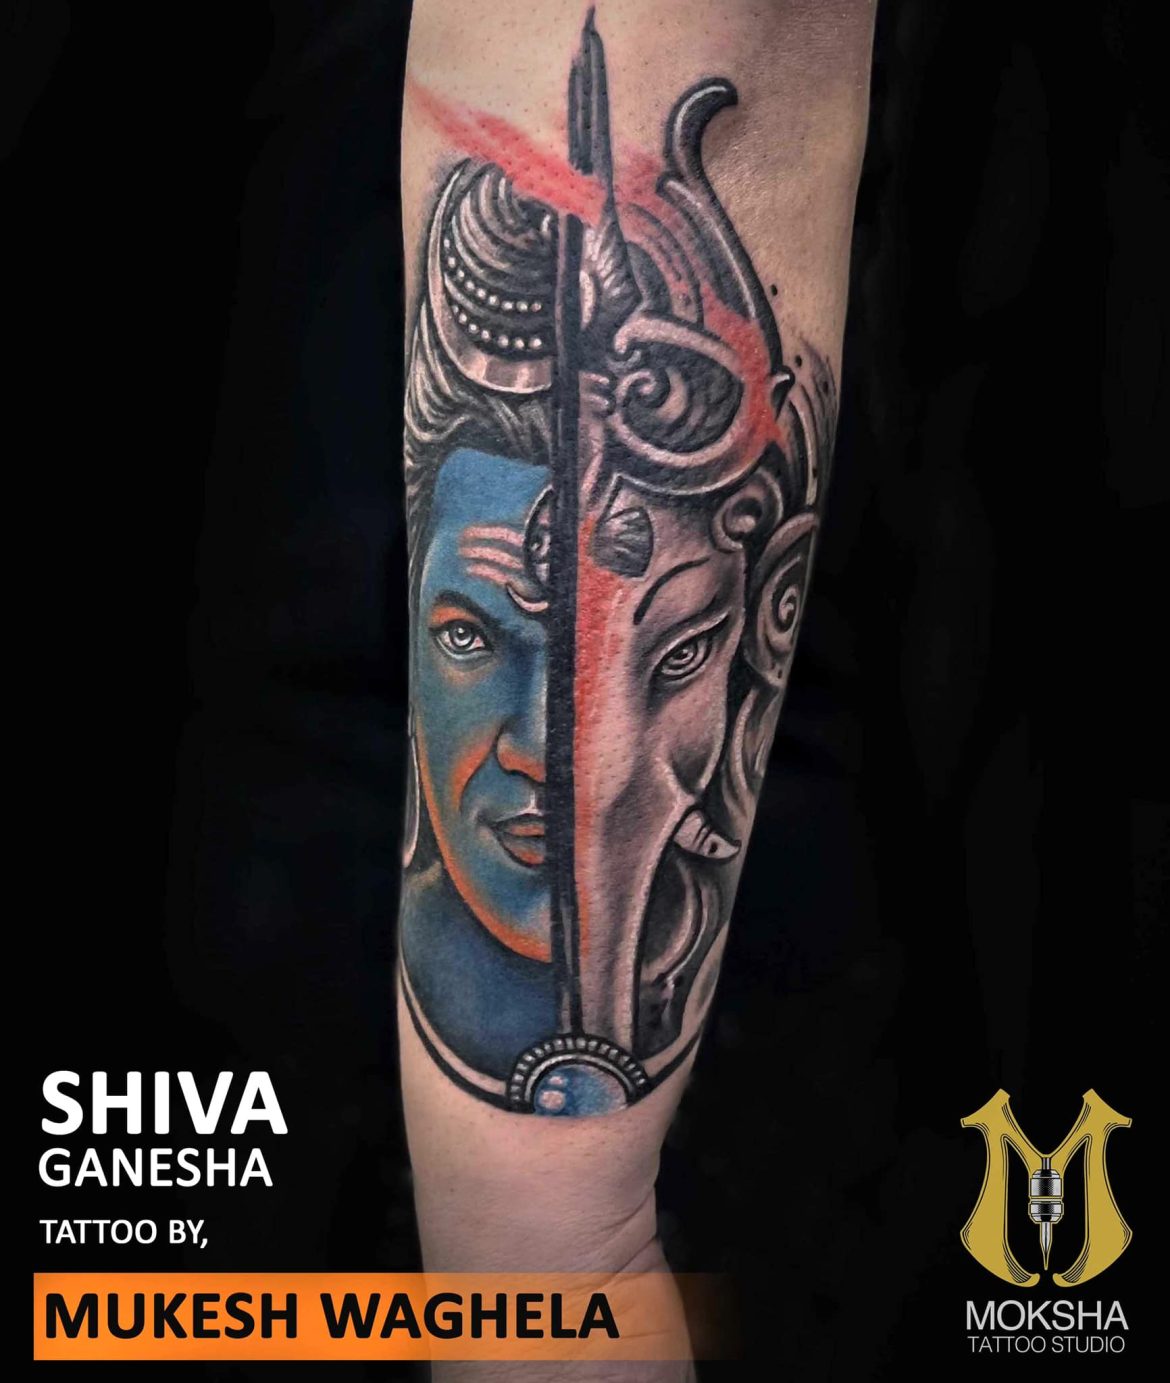 Lord ganesh tattoo ideas | ganpati bappa tattoo images - YouTube